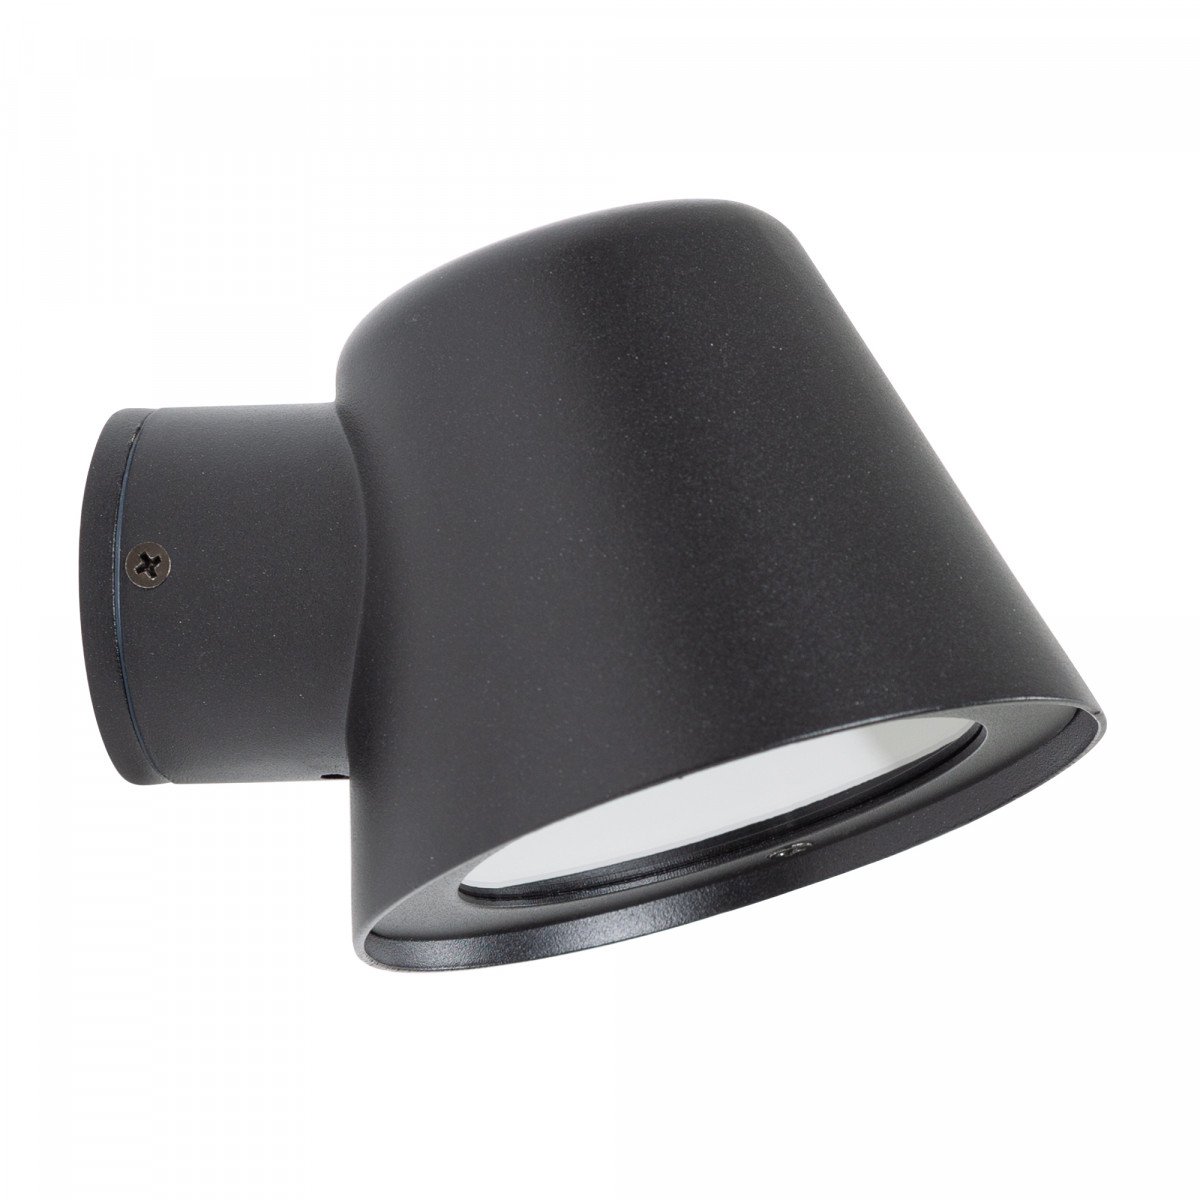 Muurspot Vita Cup matzwart, stoere stijlvol vormgegeven wandverlichting voor gefocust licht GU10 wandspot 